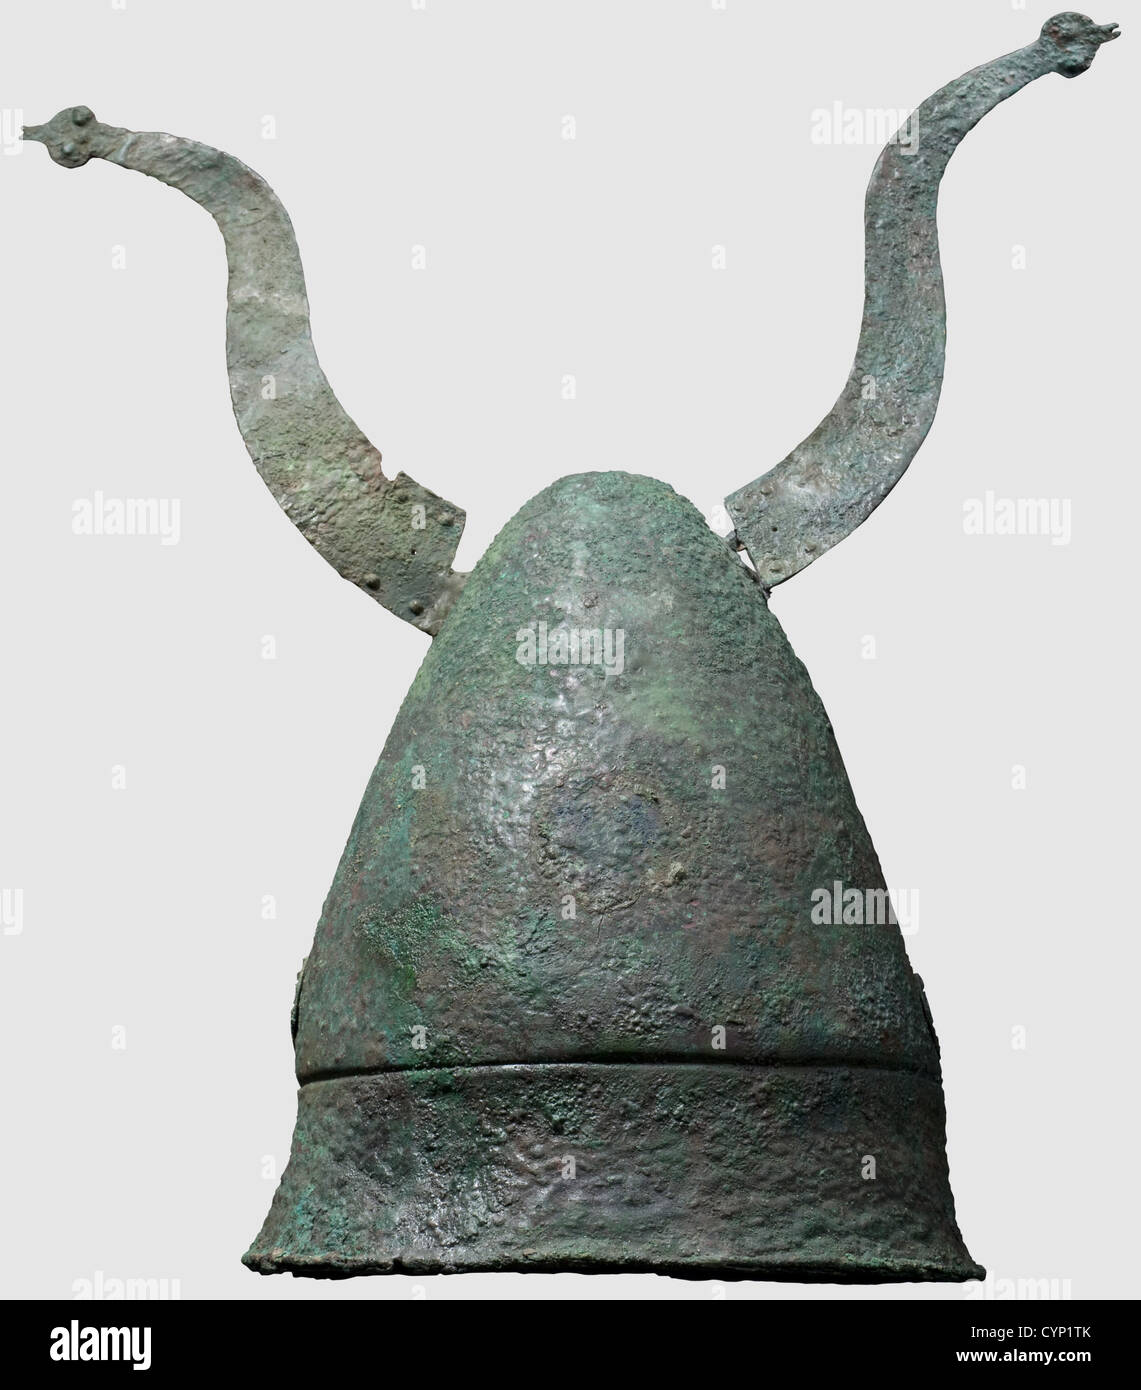 Helmet with horns -Fotos und -Bildmaterial in hoher Auflösung - Seite 3 -  Alamy